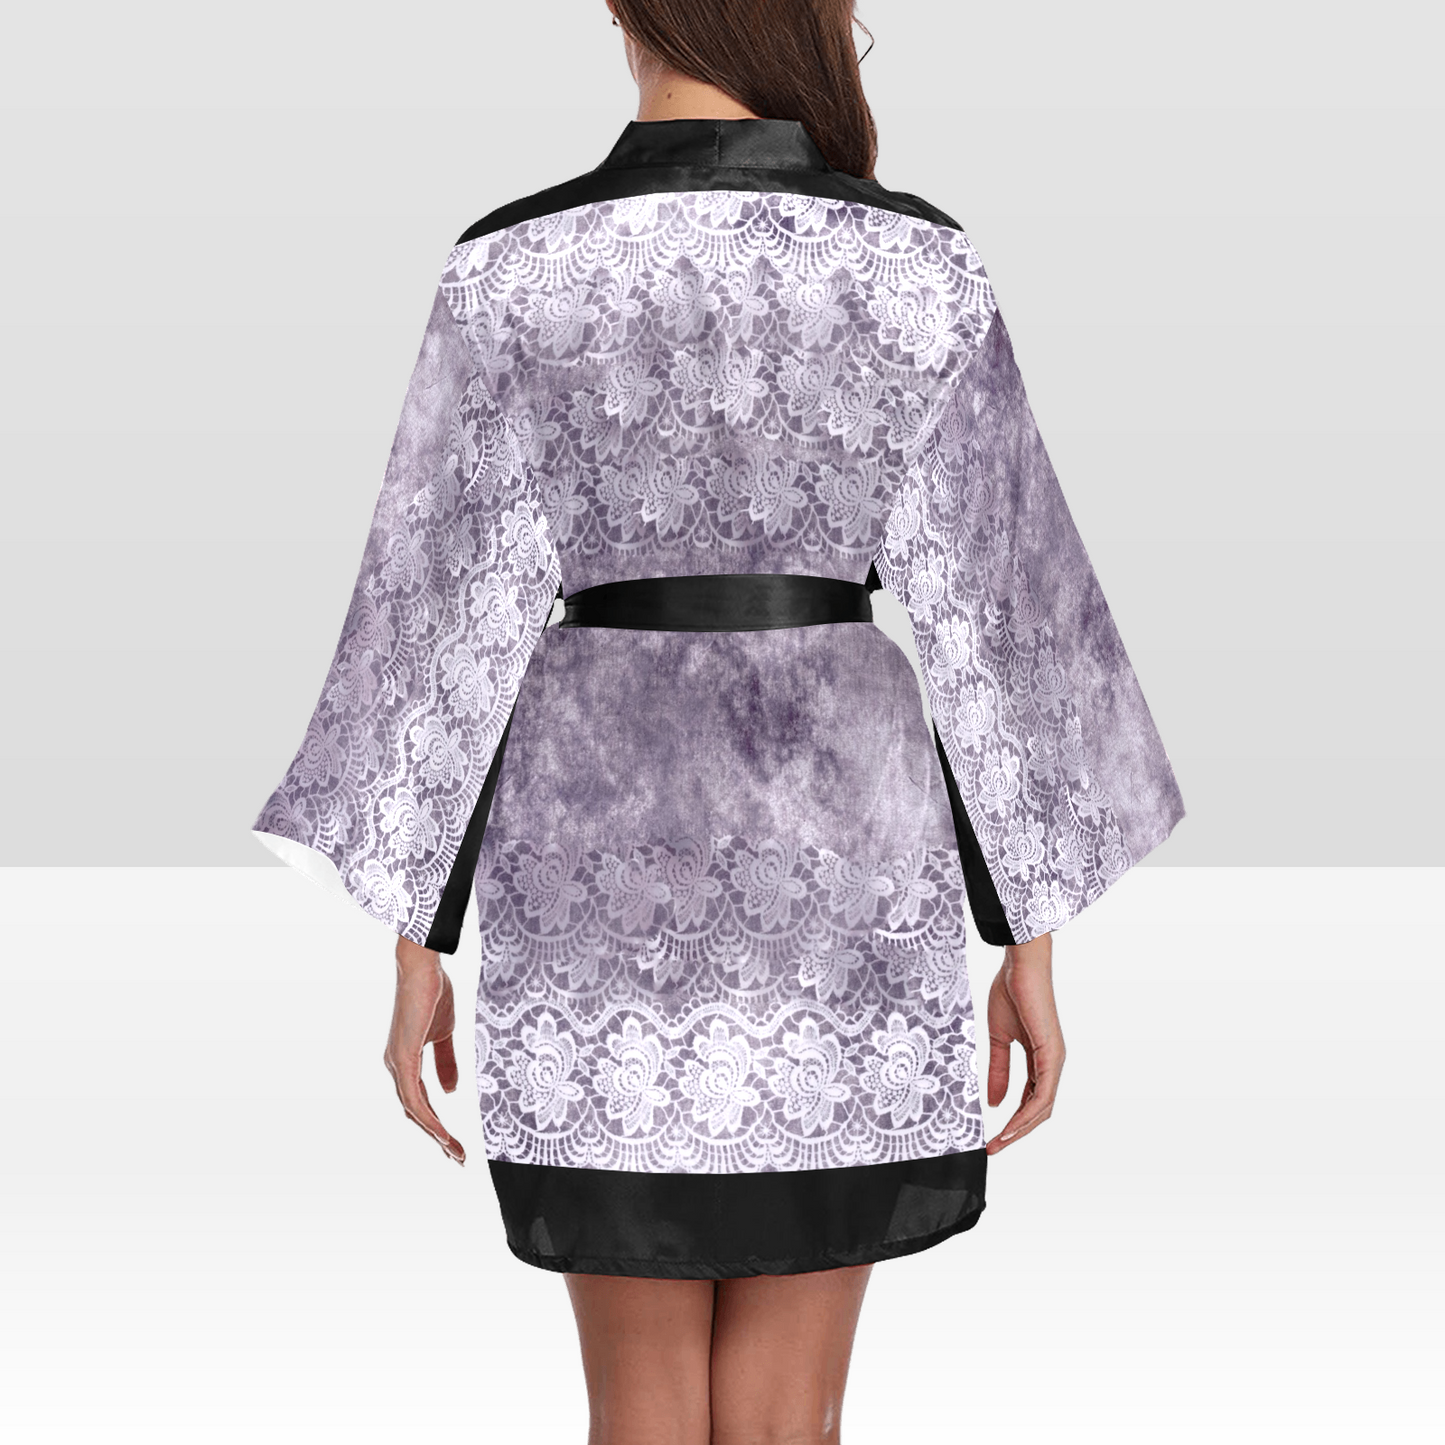 Victorian Lace Kimono Robe, Black or White Trim, Sizes XS to 2XL, Design 39